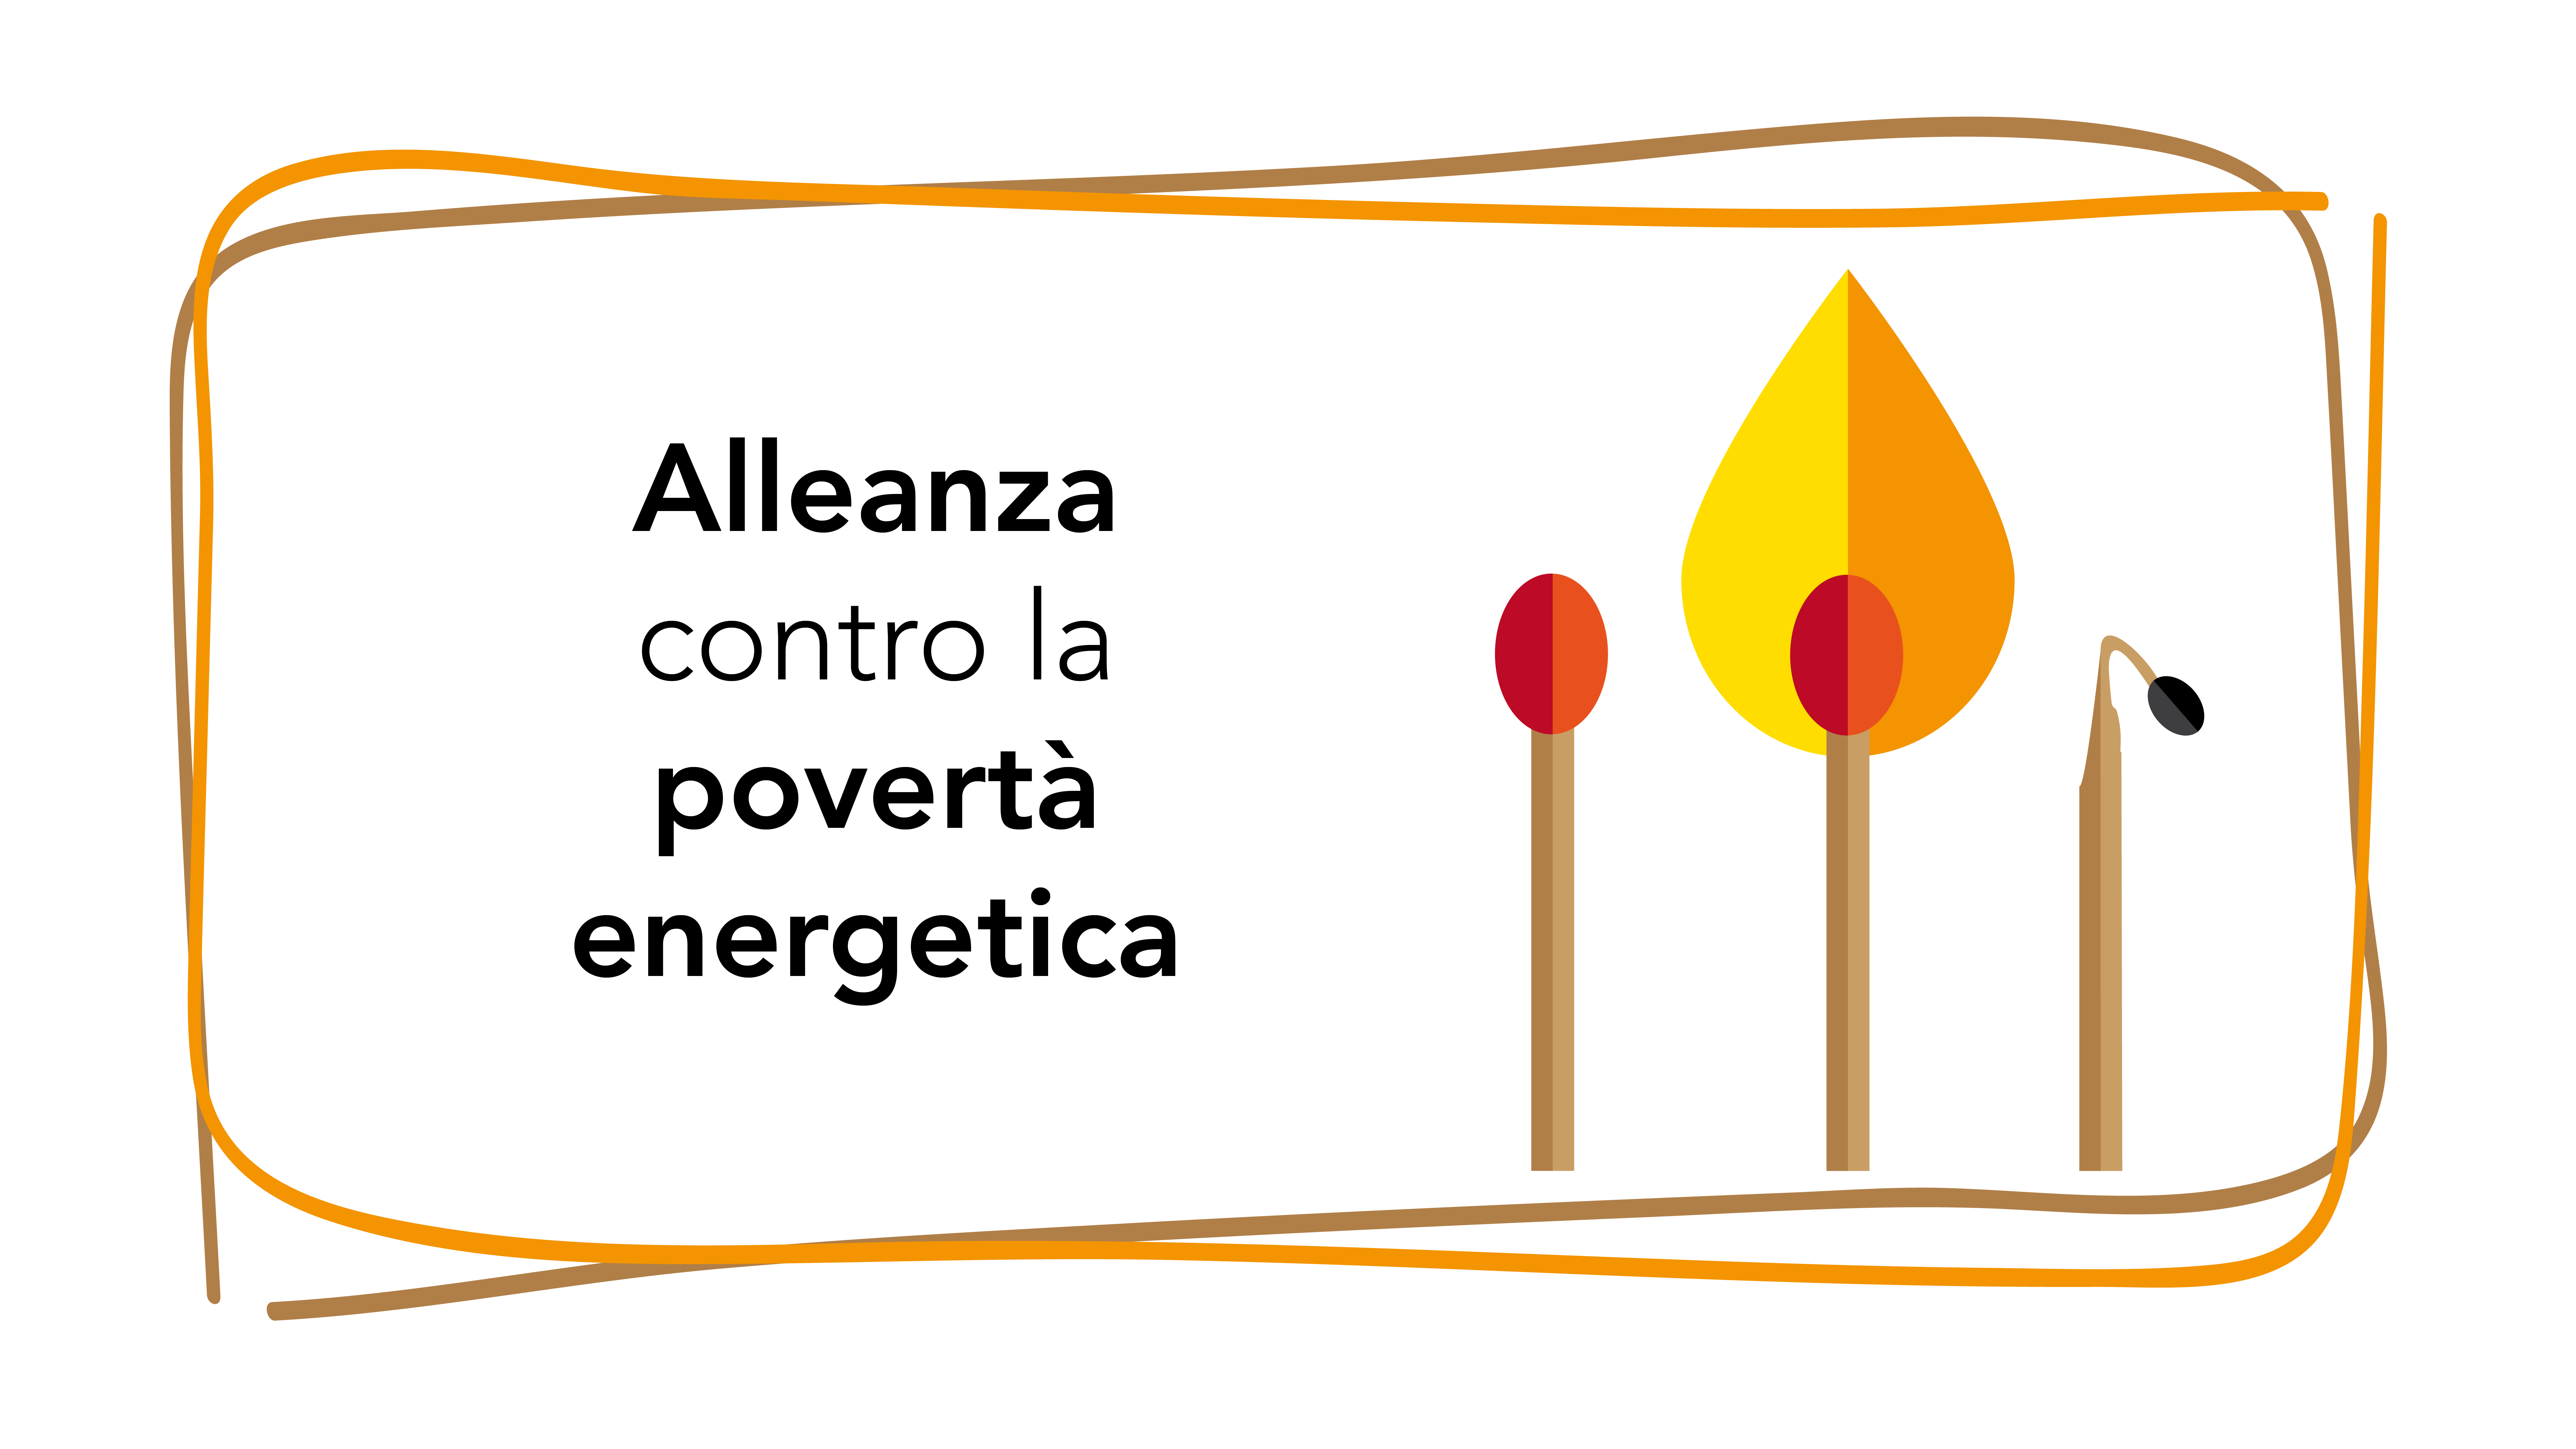 alleanza contro la povertà energetica logo